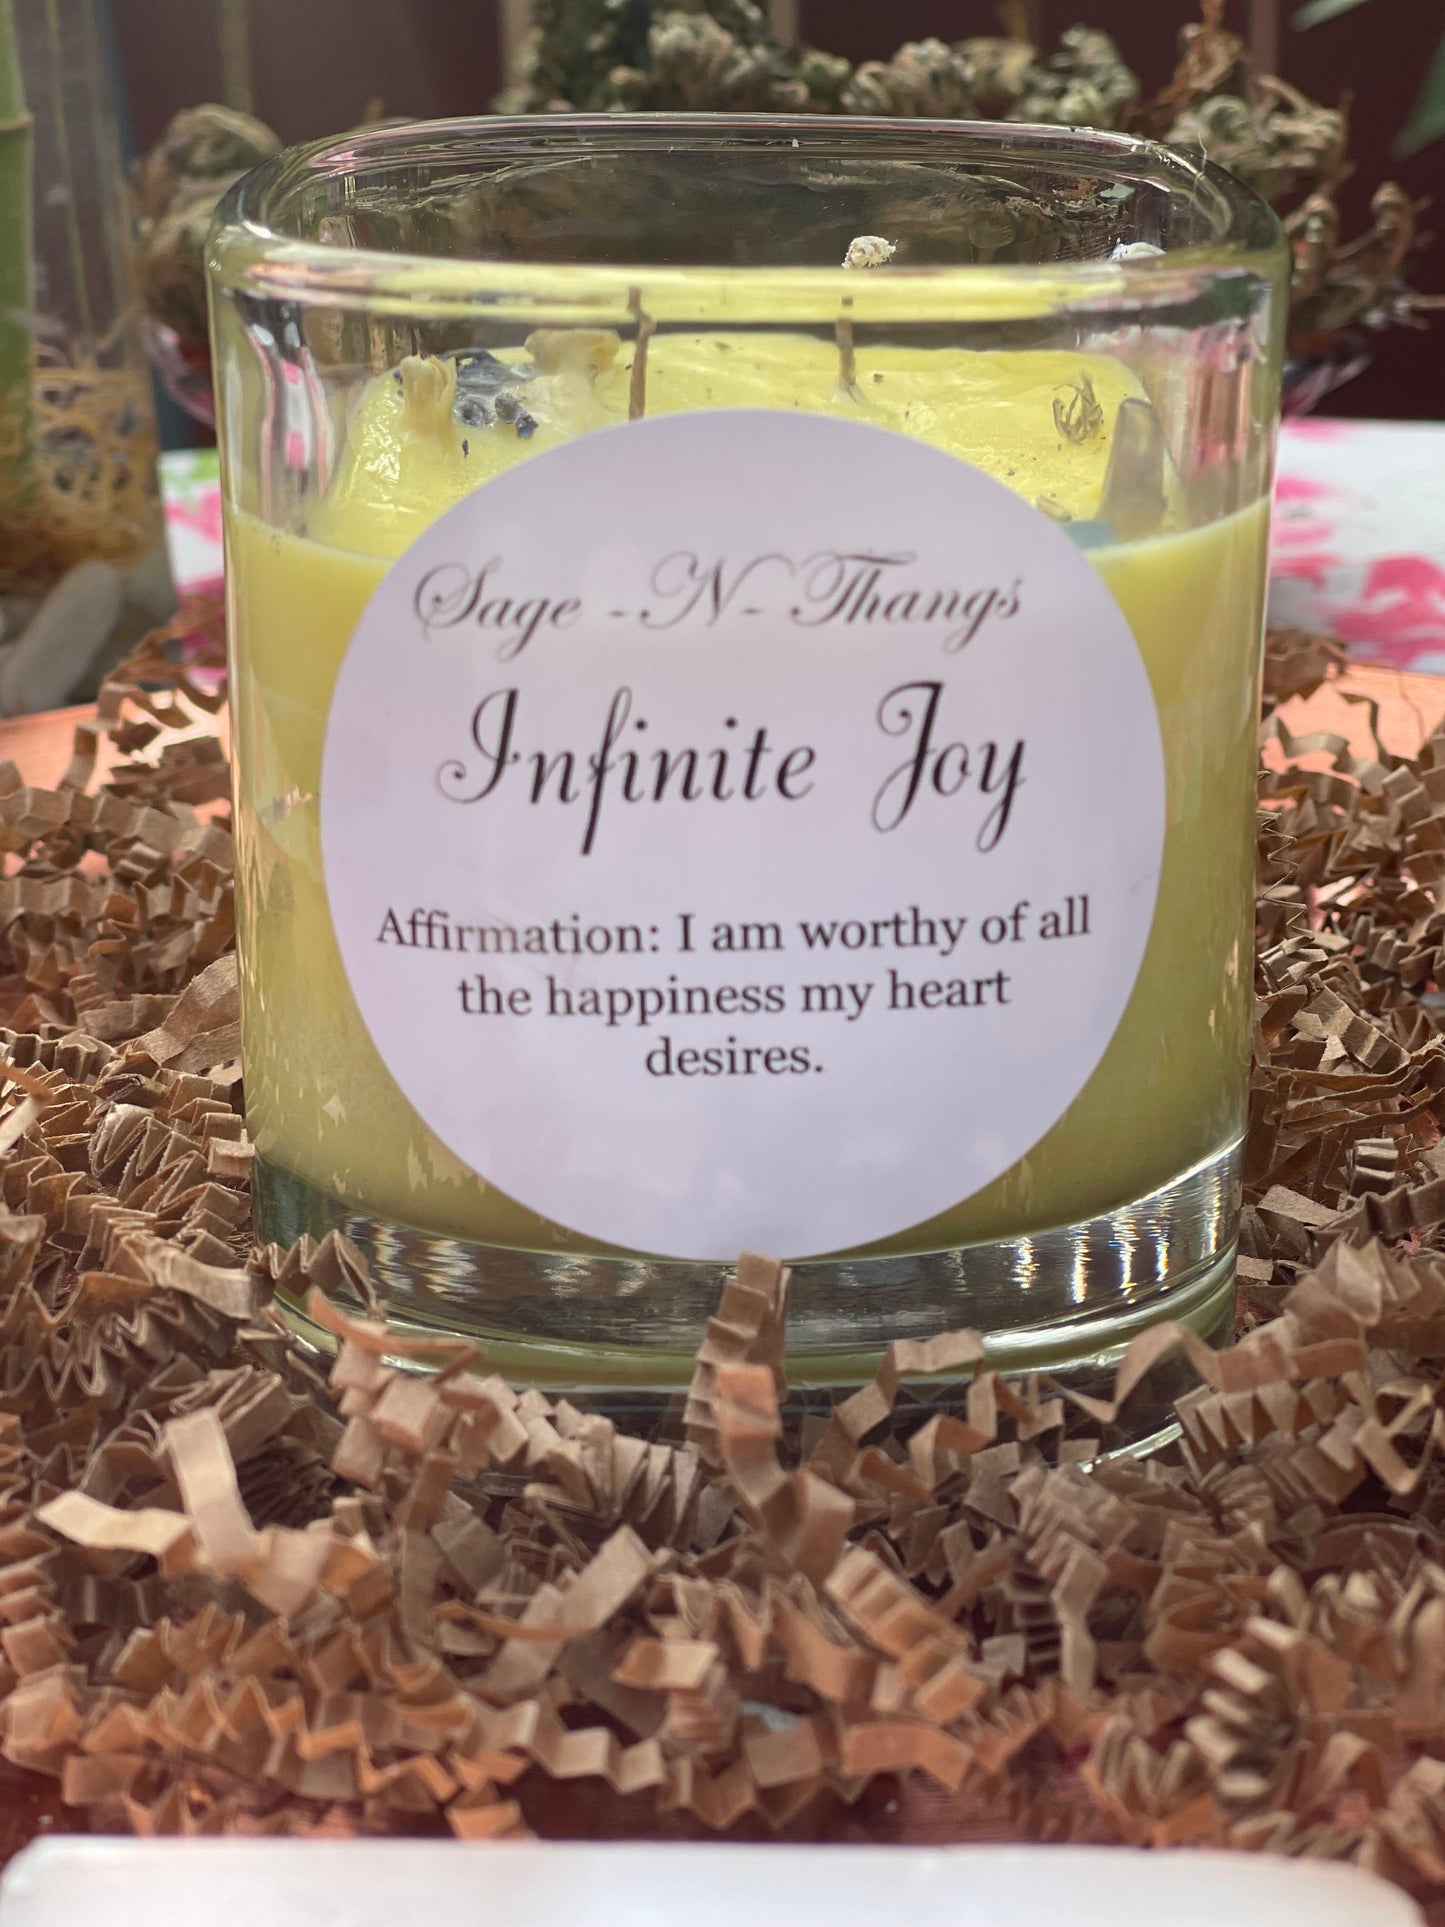 Infinite Joy by Sage N Thangs